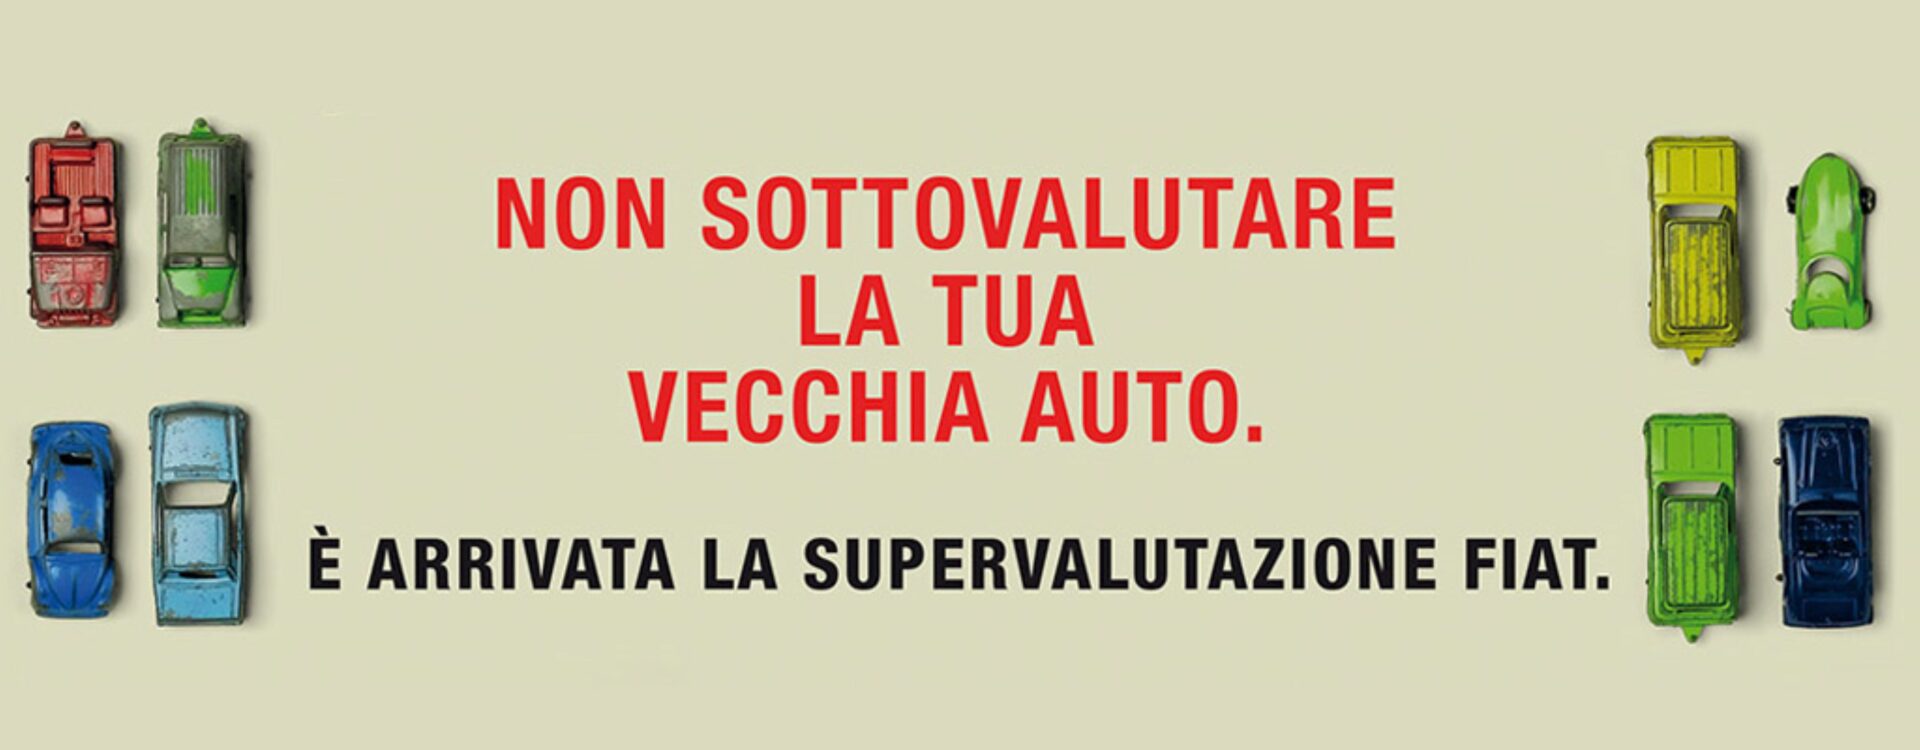 Supervalutazione Usato Fiat Offerta 2021